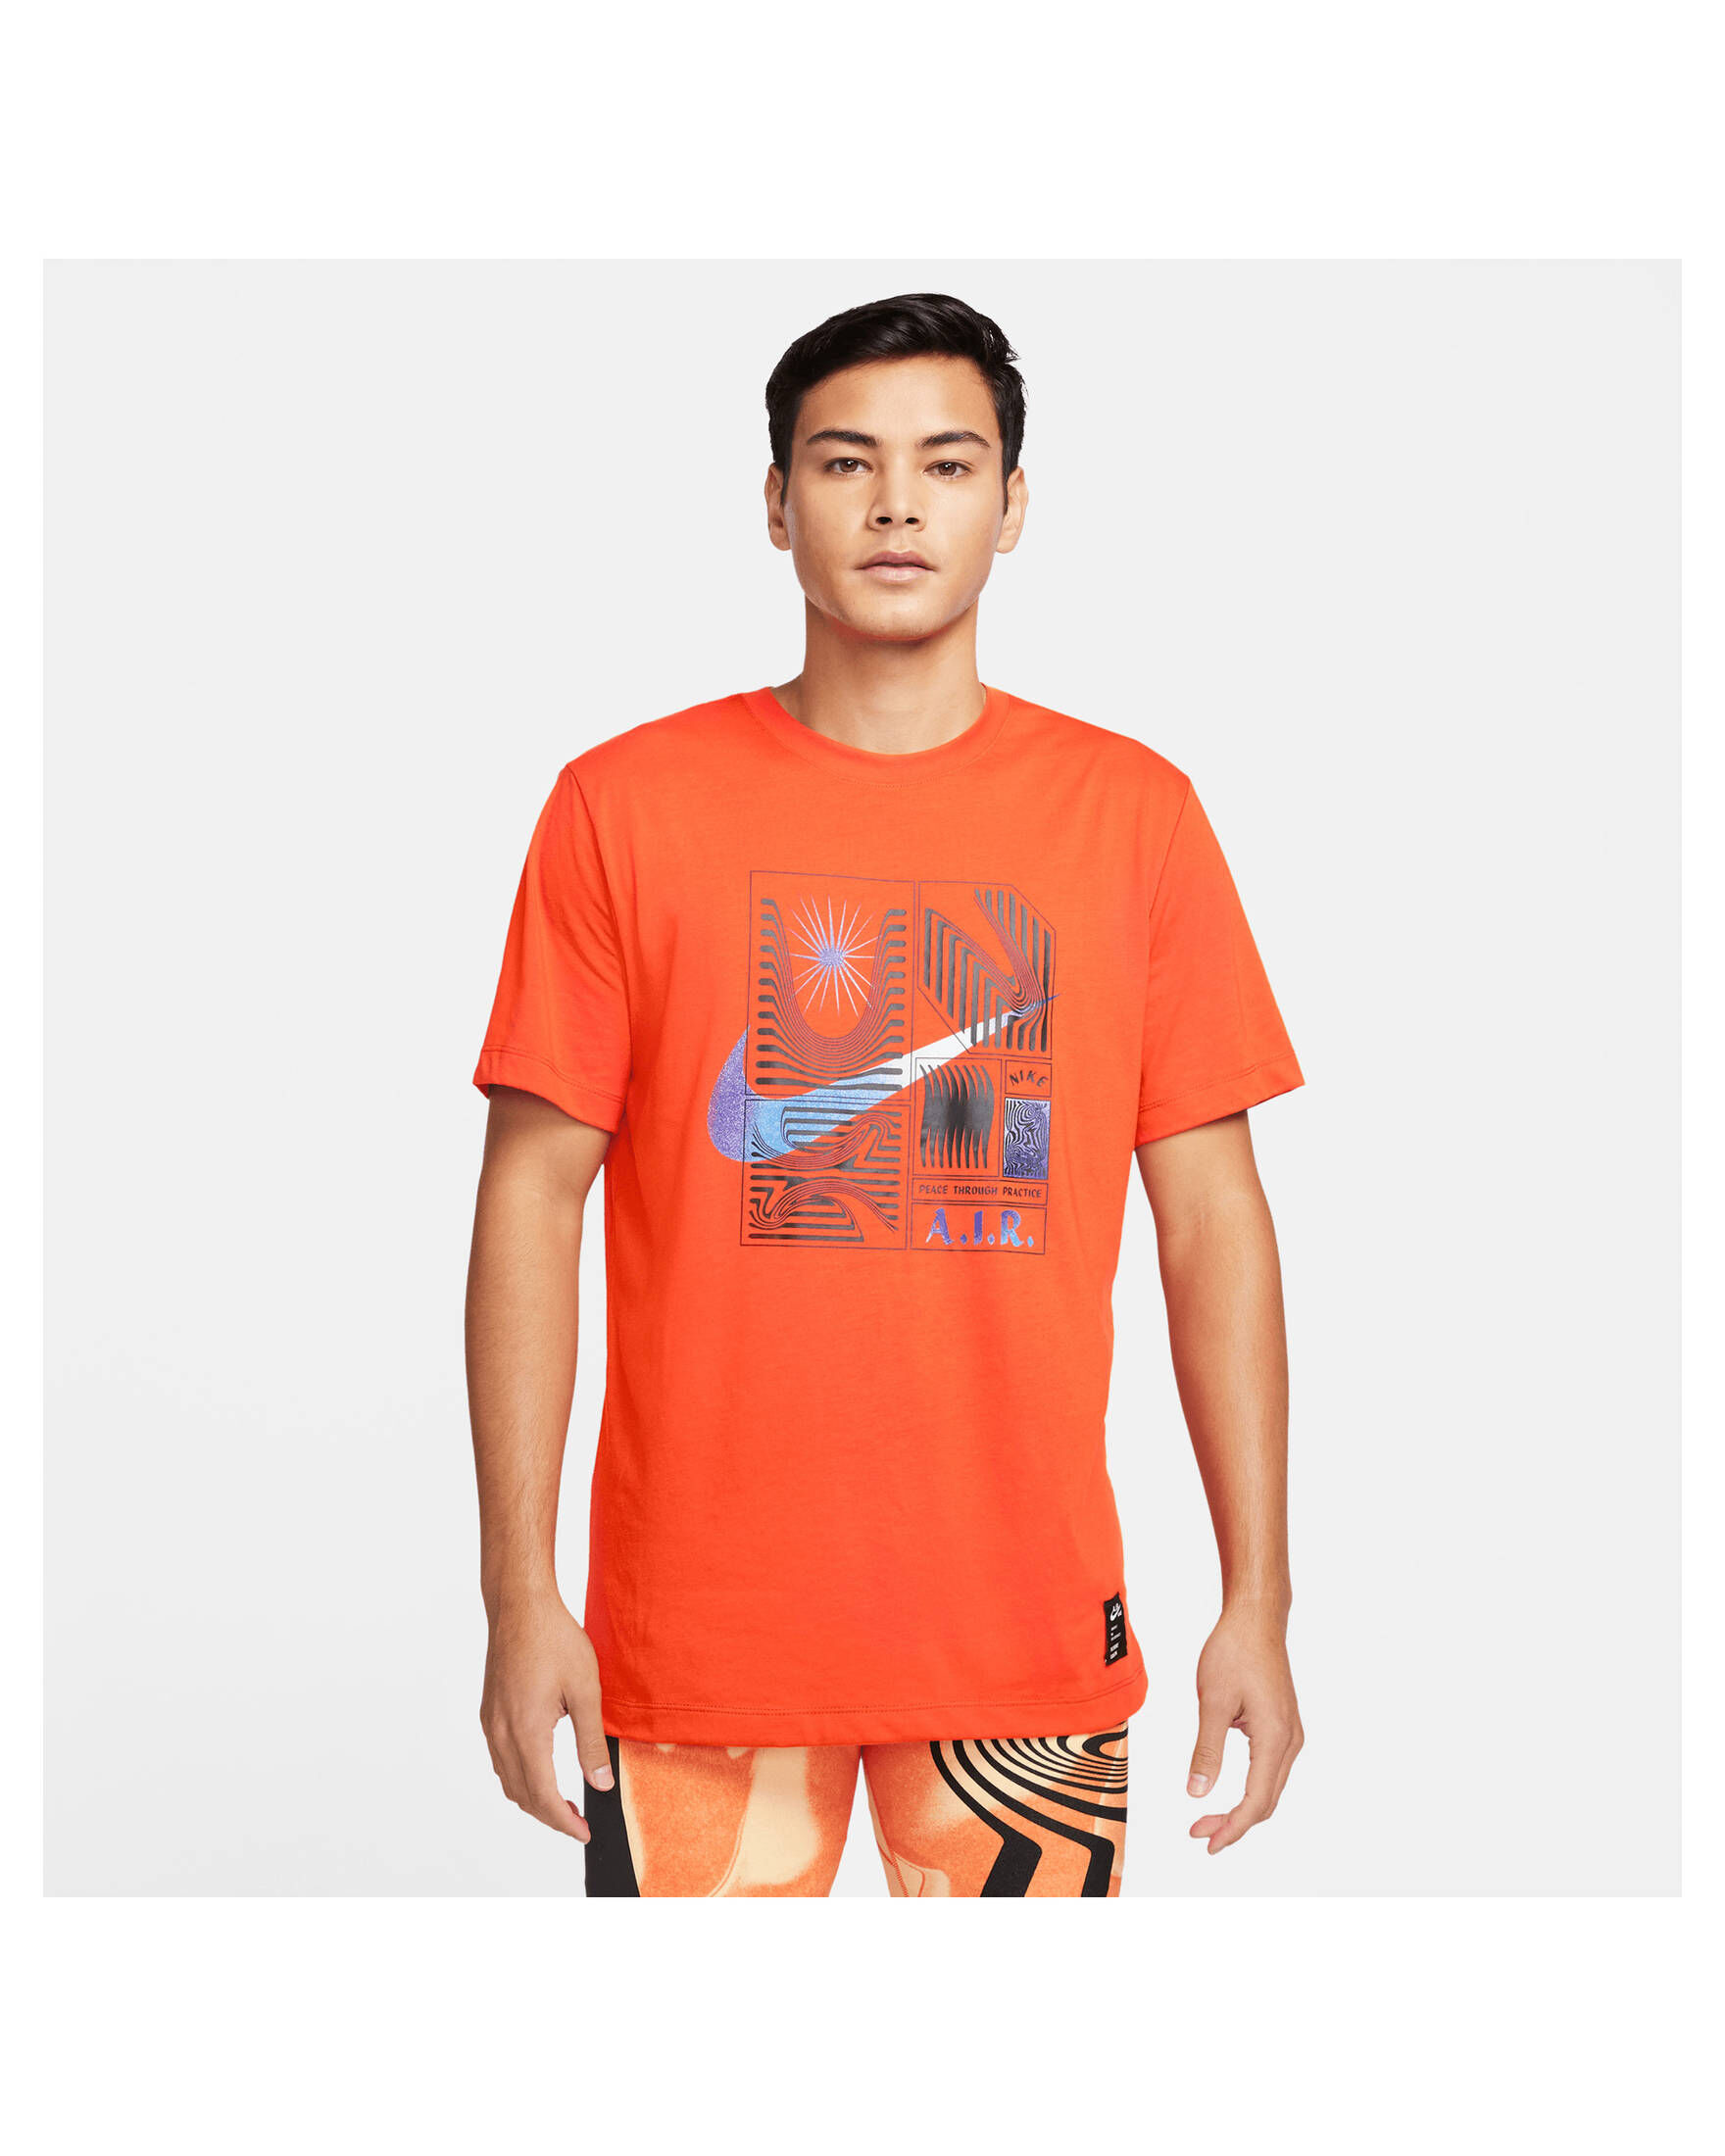 Nike Herren T-Shirt NIKE YOGA DRI-FIT A.I.R. kaufen | engelhorn